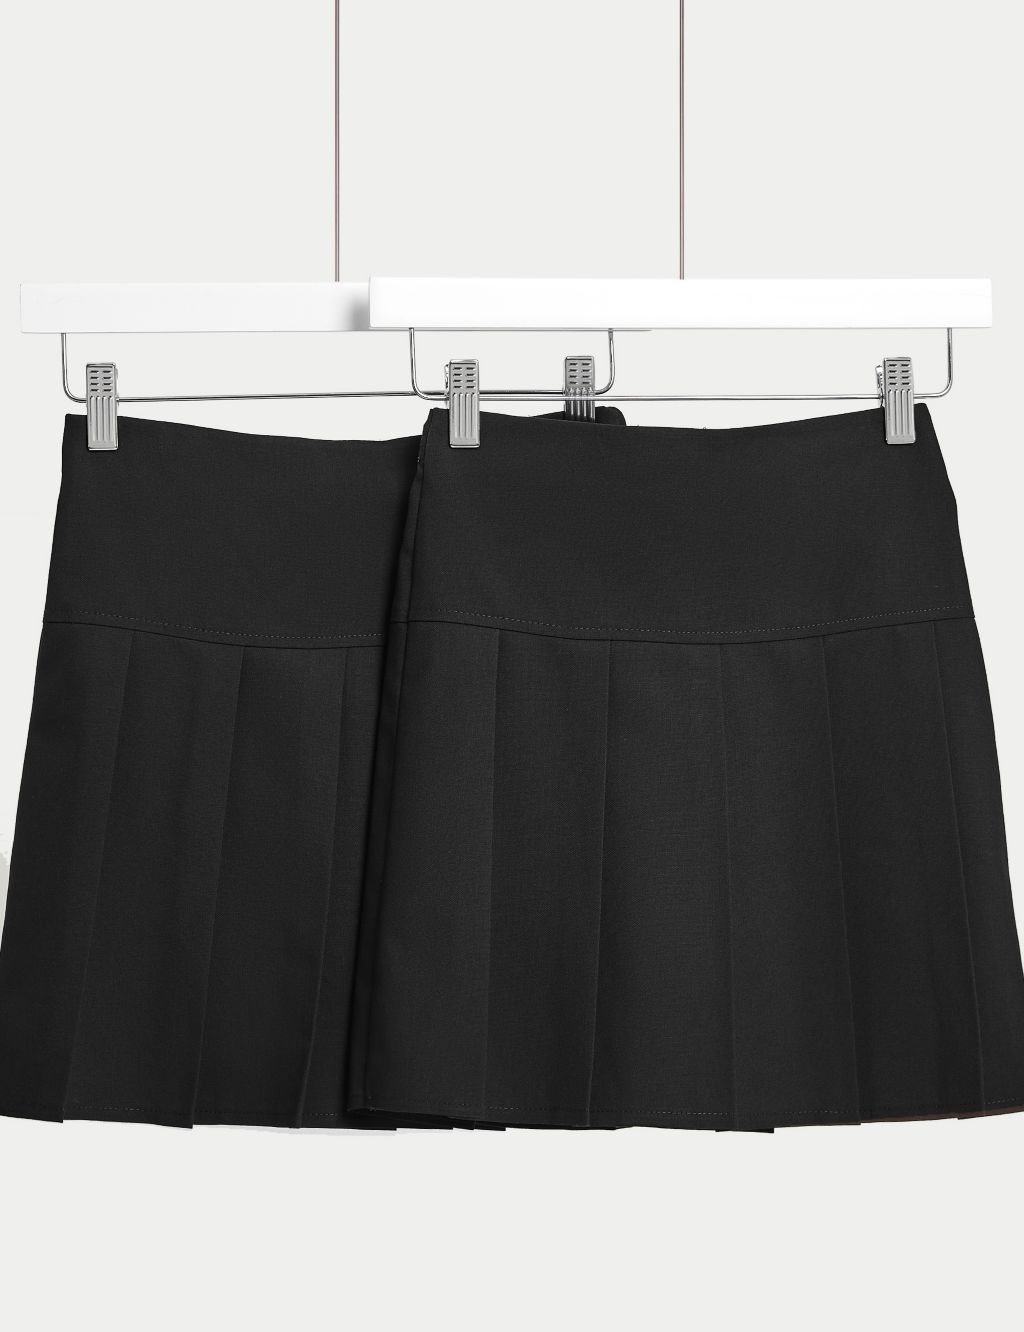 Senior Twin Pleat Skirt UK